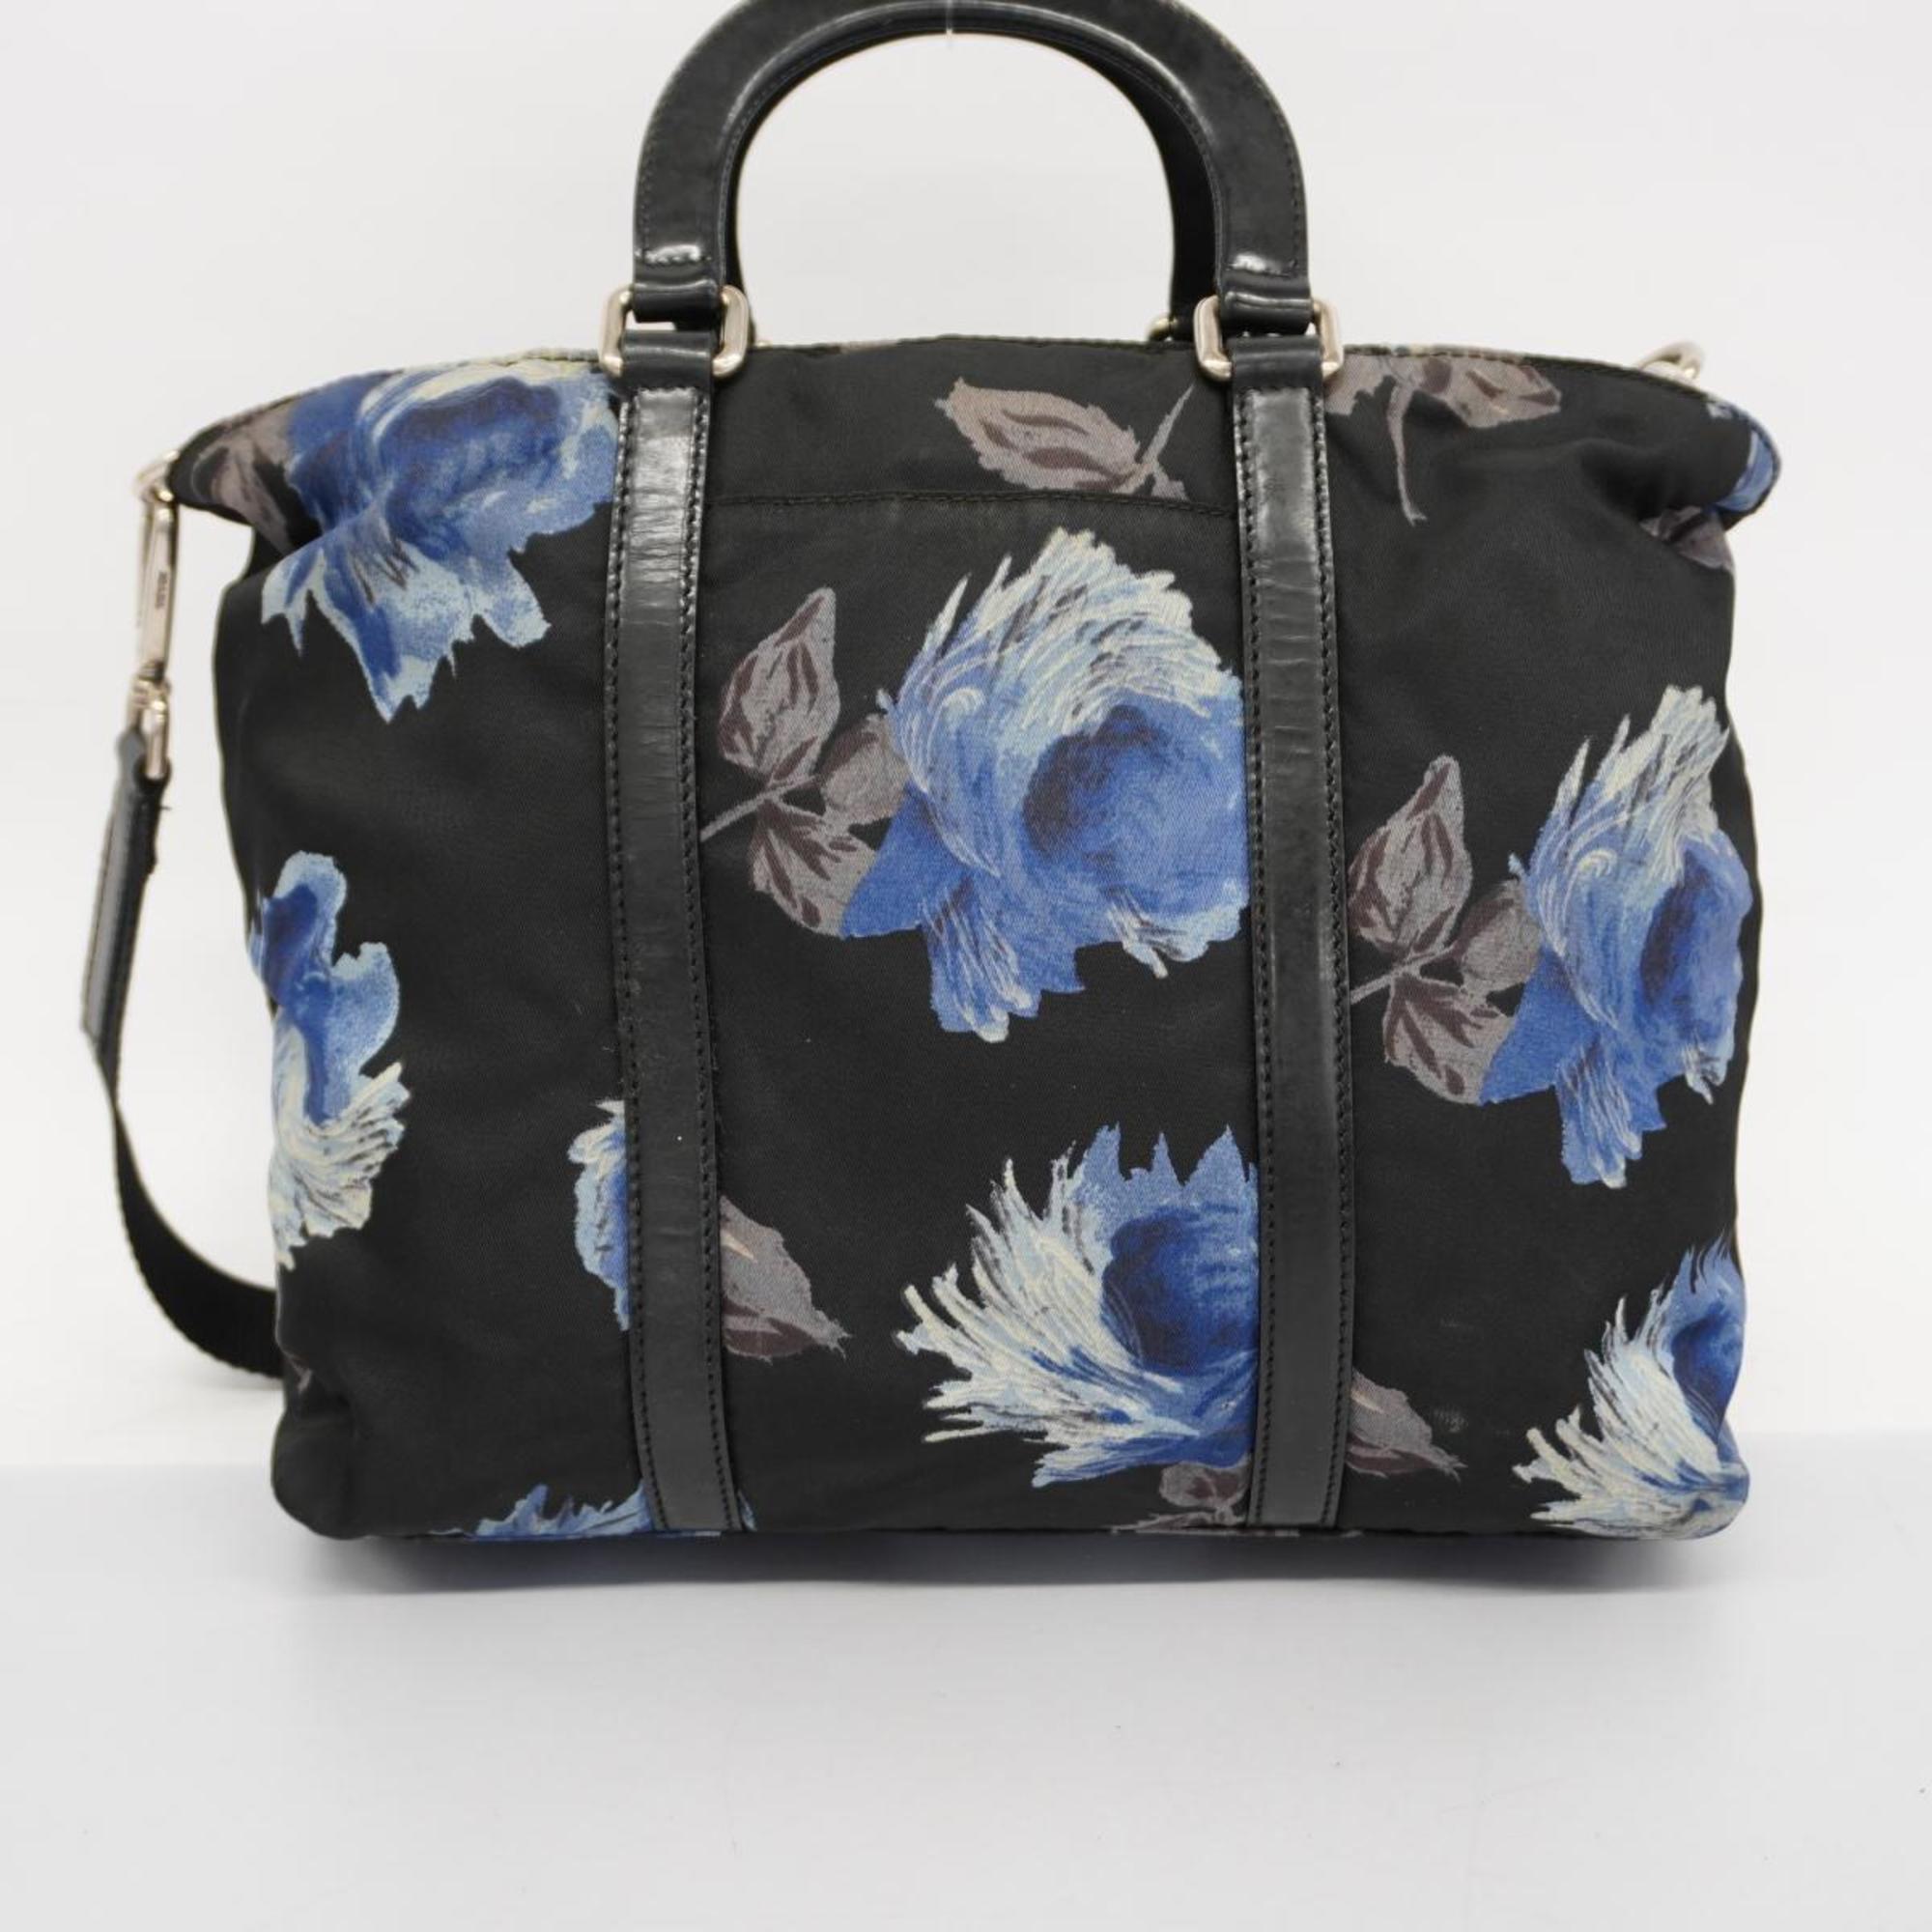 Prada handbag nylon black ladies